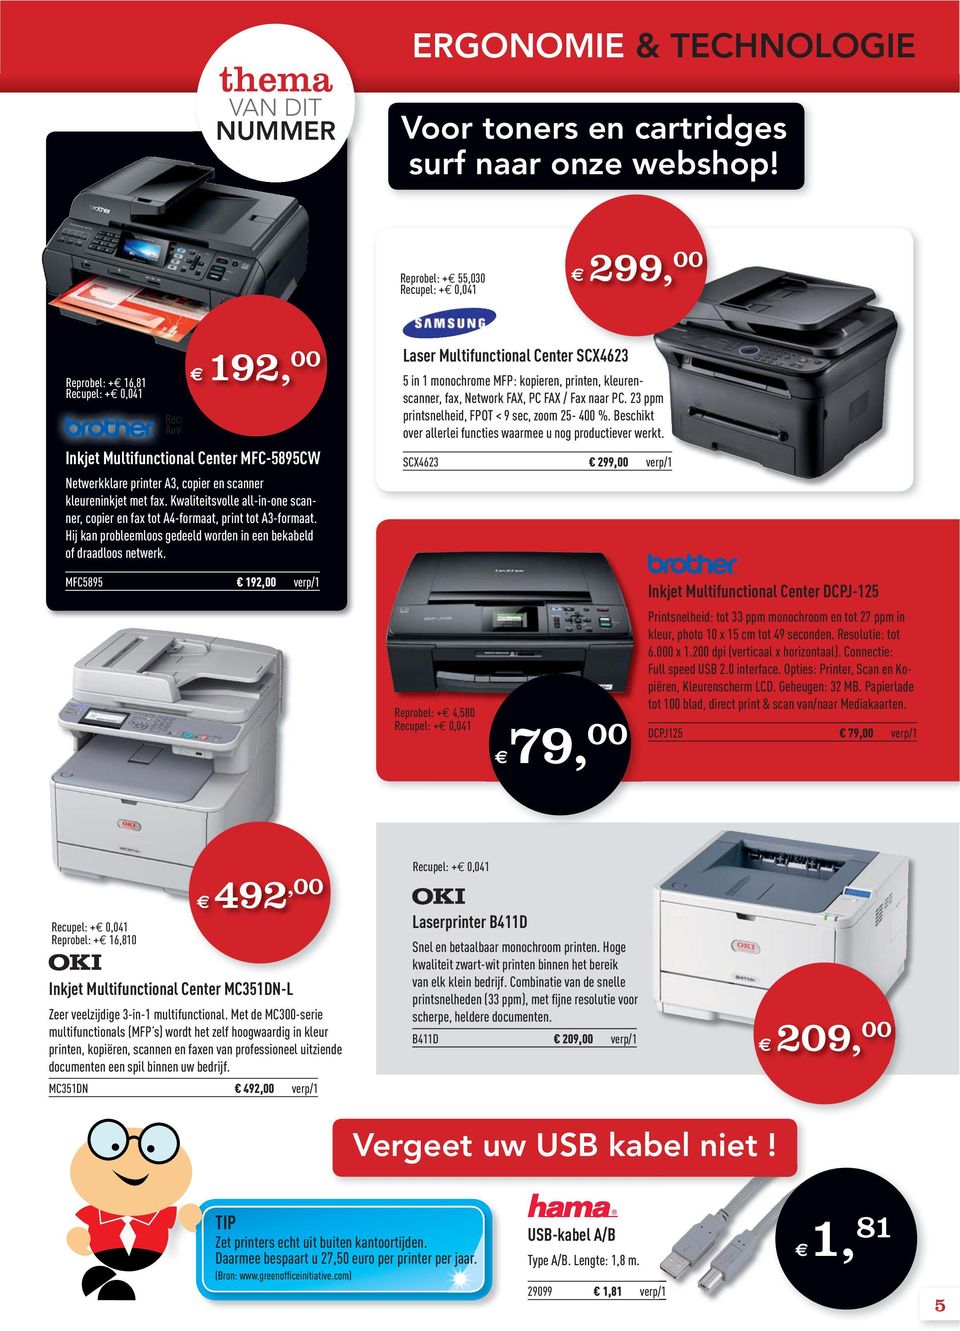 Kwaliteitsvolle all-in-one scanner, copier en fax tot A4-formaat, print tot A3-formaat. Hij kan probleemloos gedeeld worden in een bekabeld of draadloos netwerk.